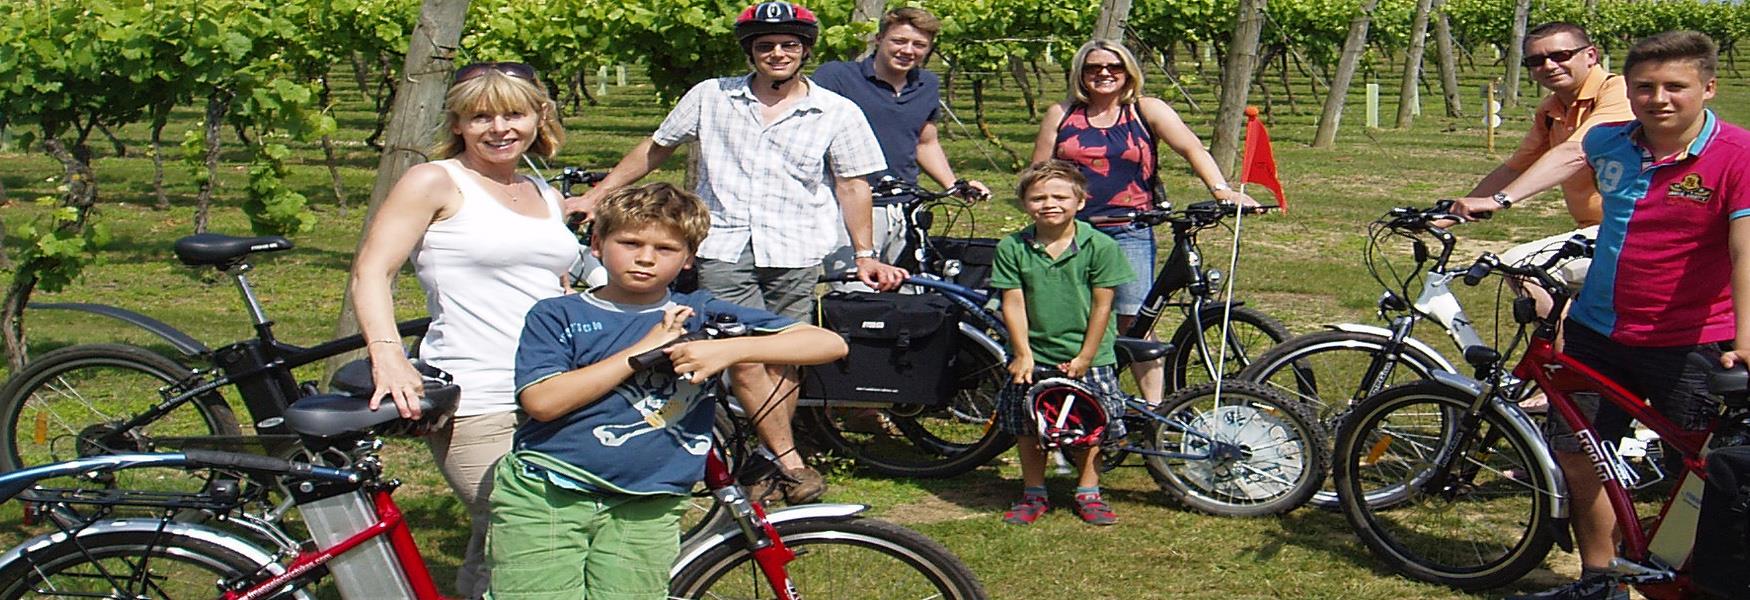 A family group enjoying an electric bike ride